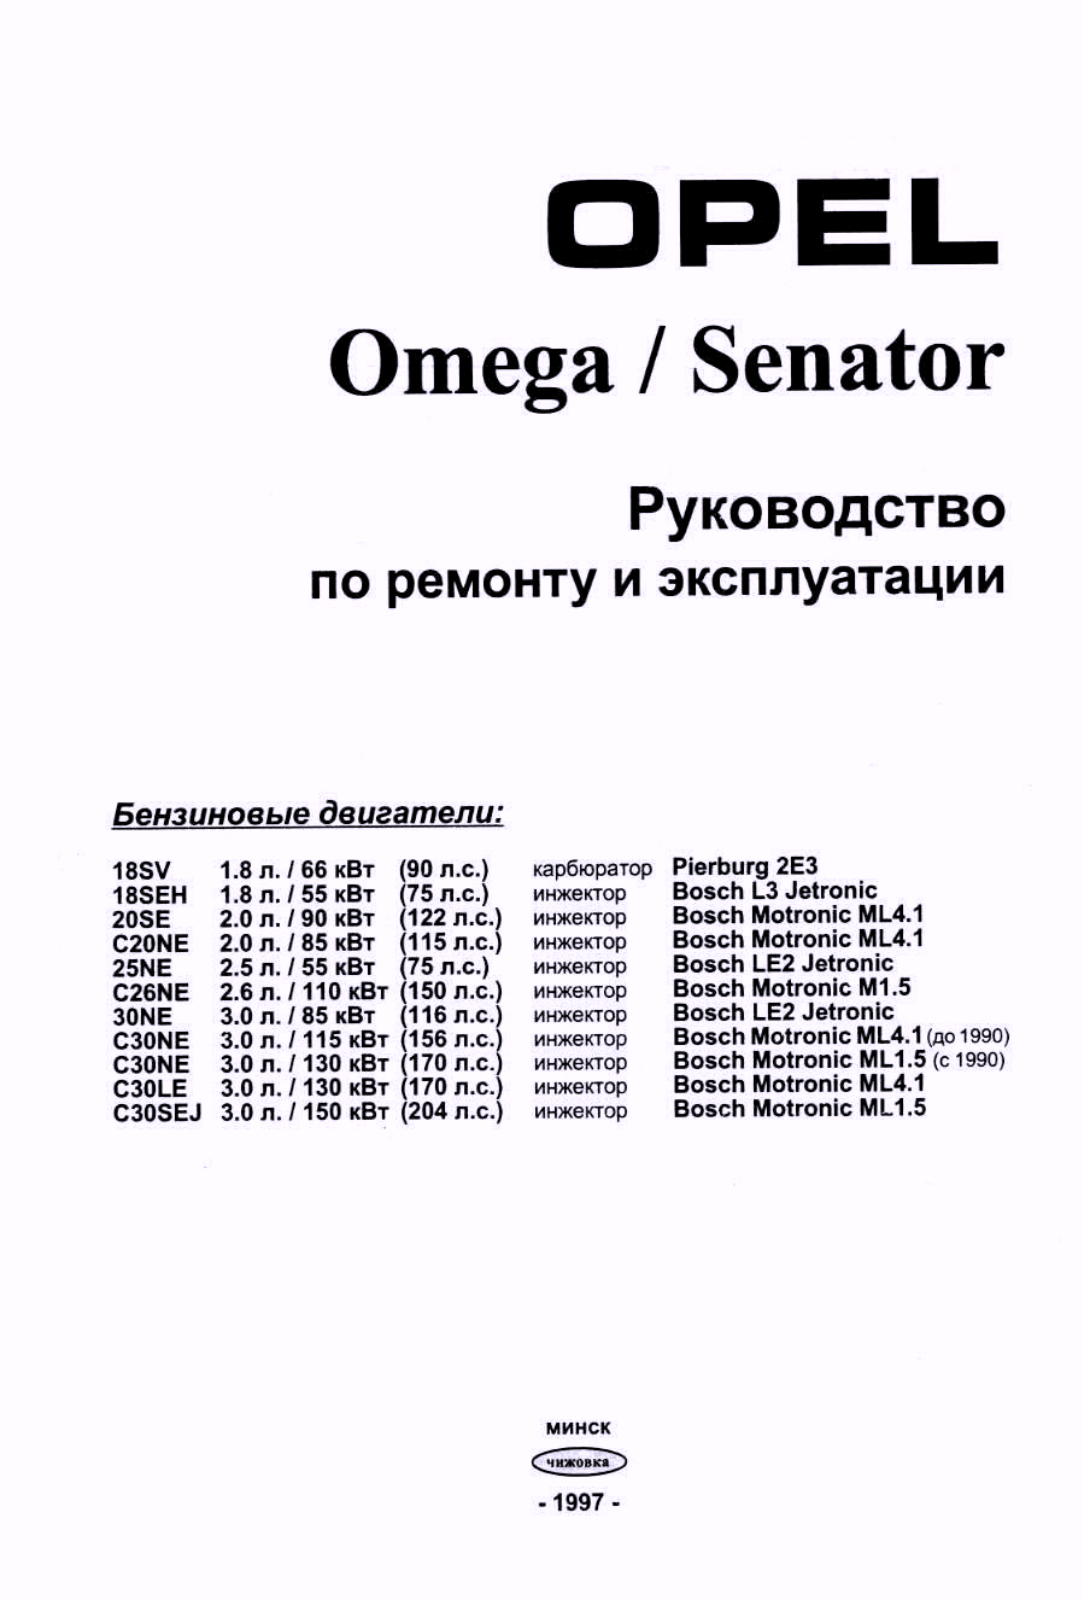 Opel Omega 1997, Senator 1997 User Manual